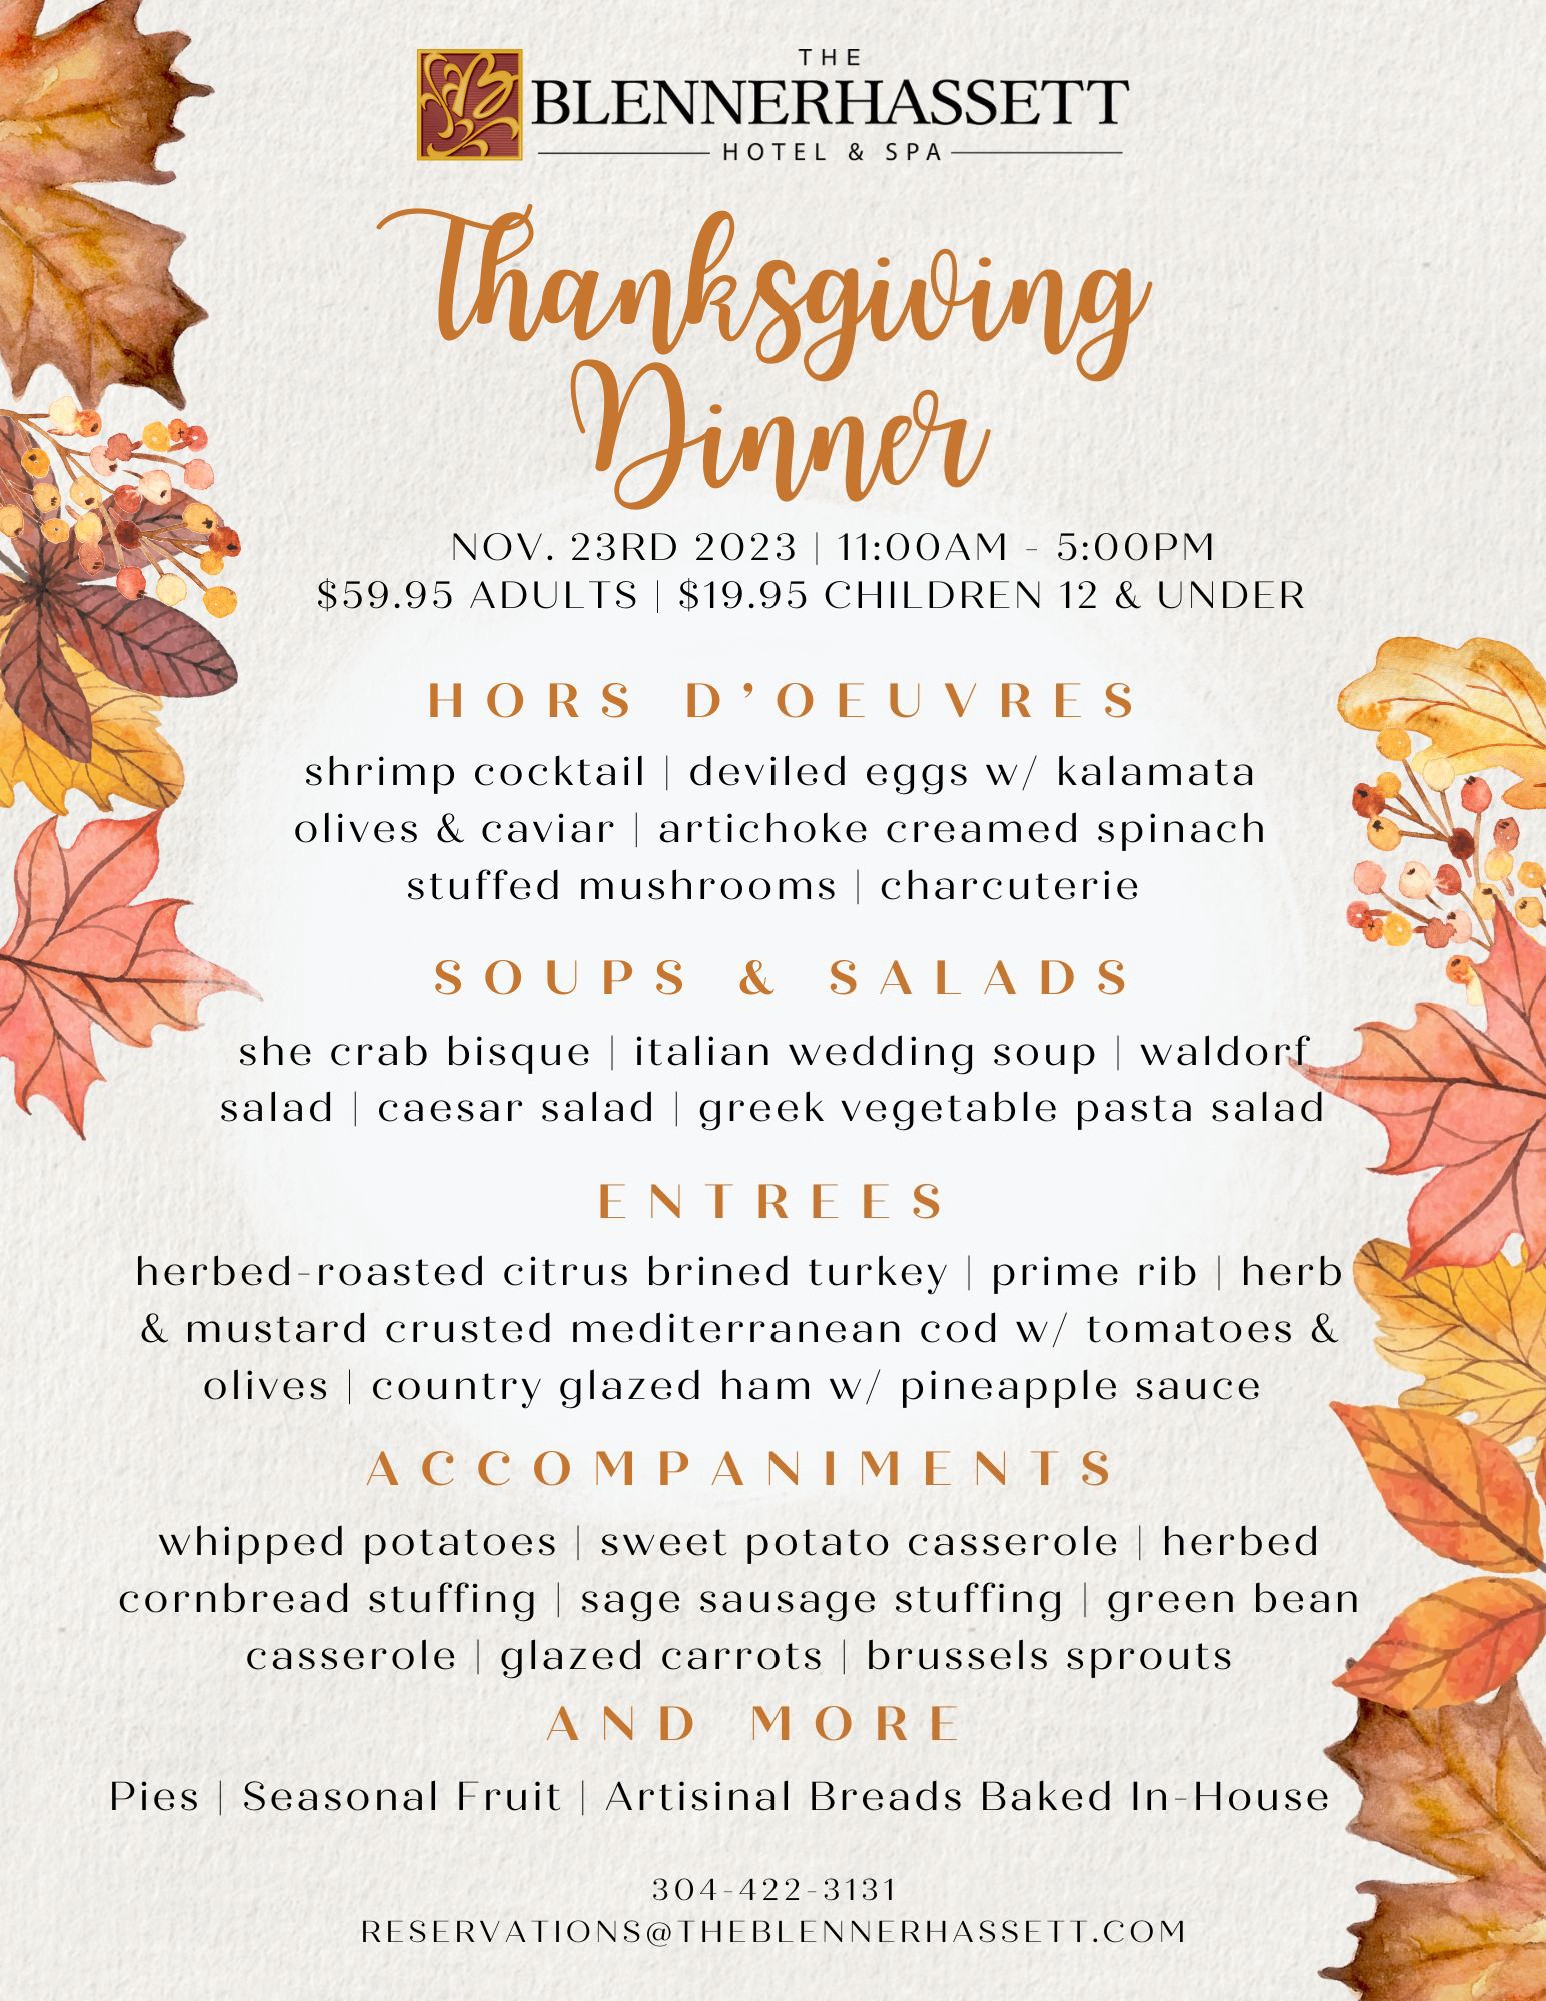 Thanksgiving Dinner - The Blennerhassett Hotel & Spa